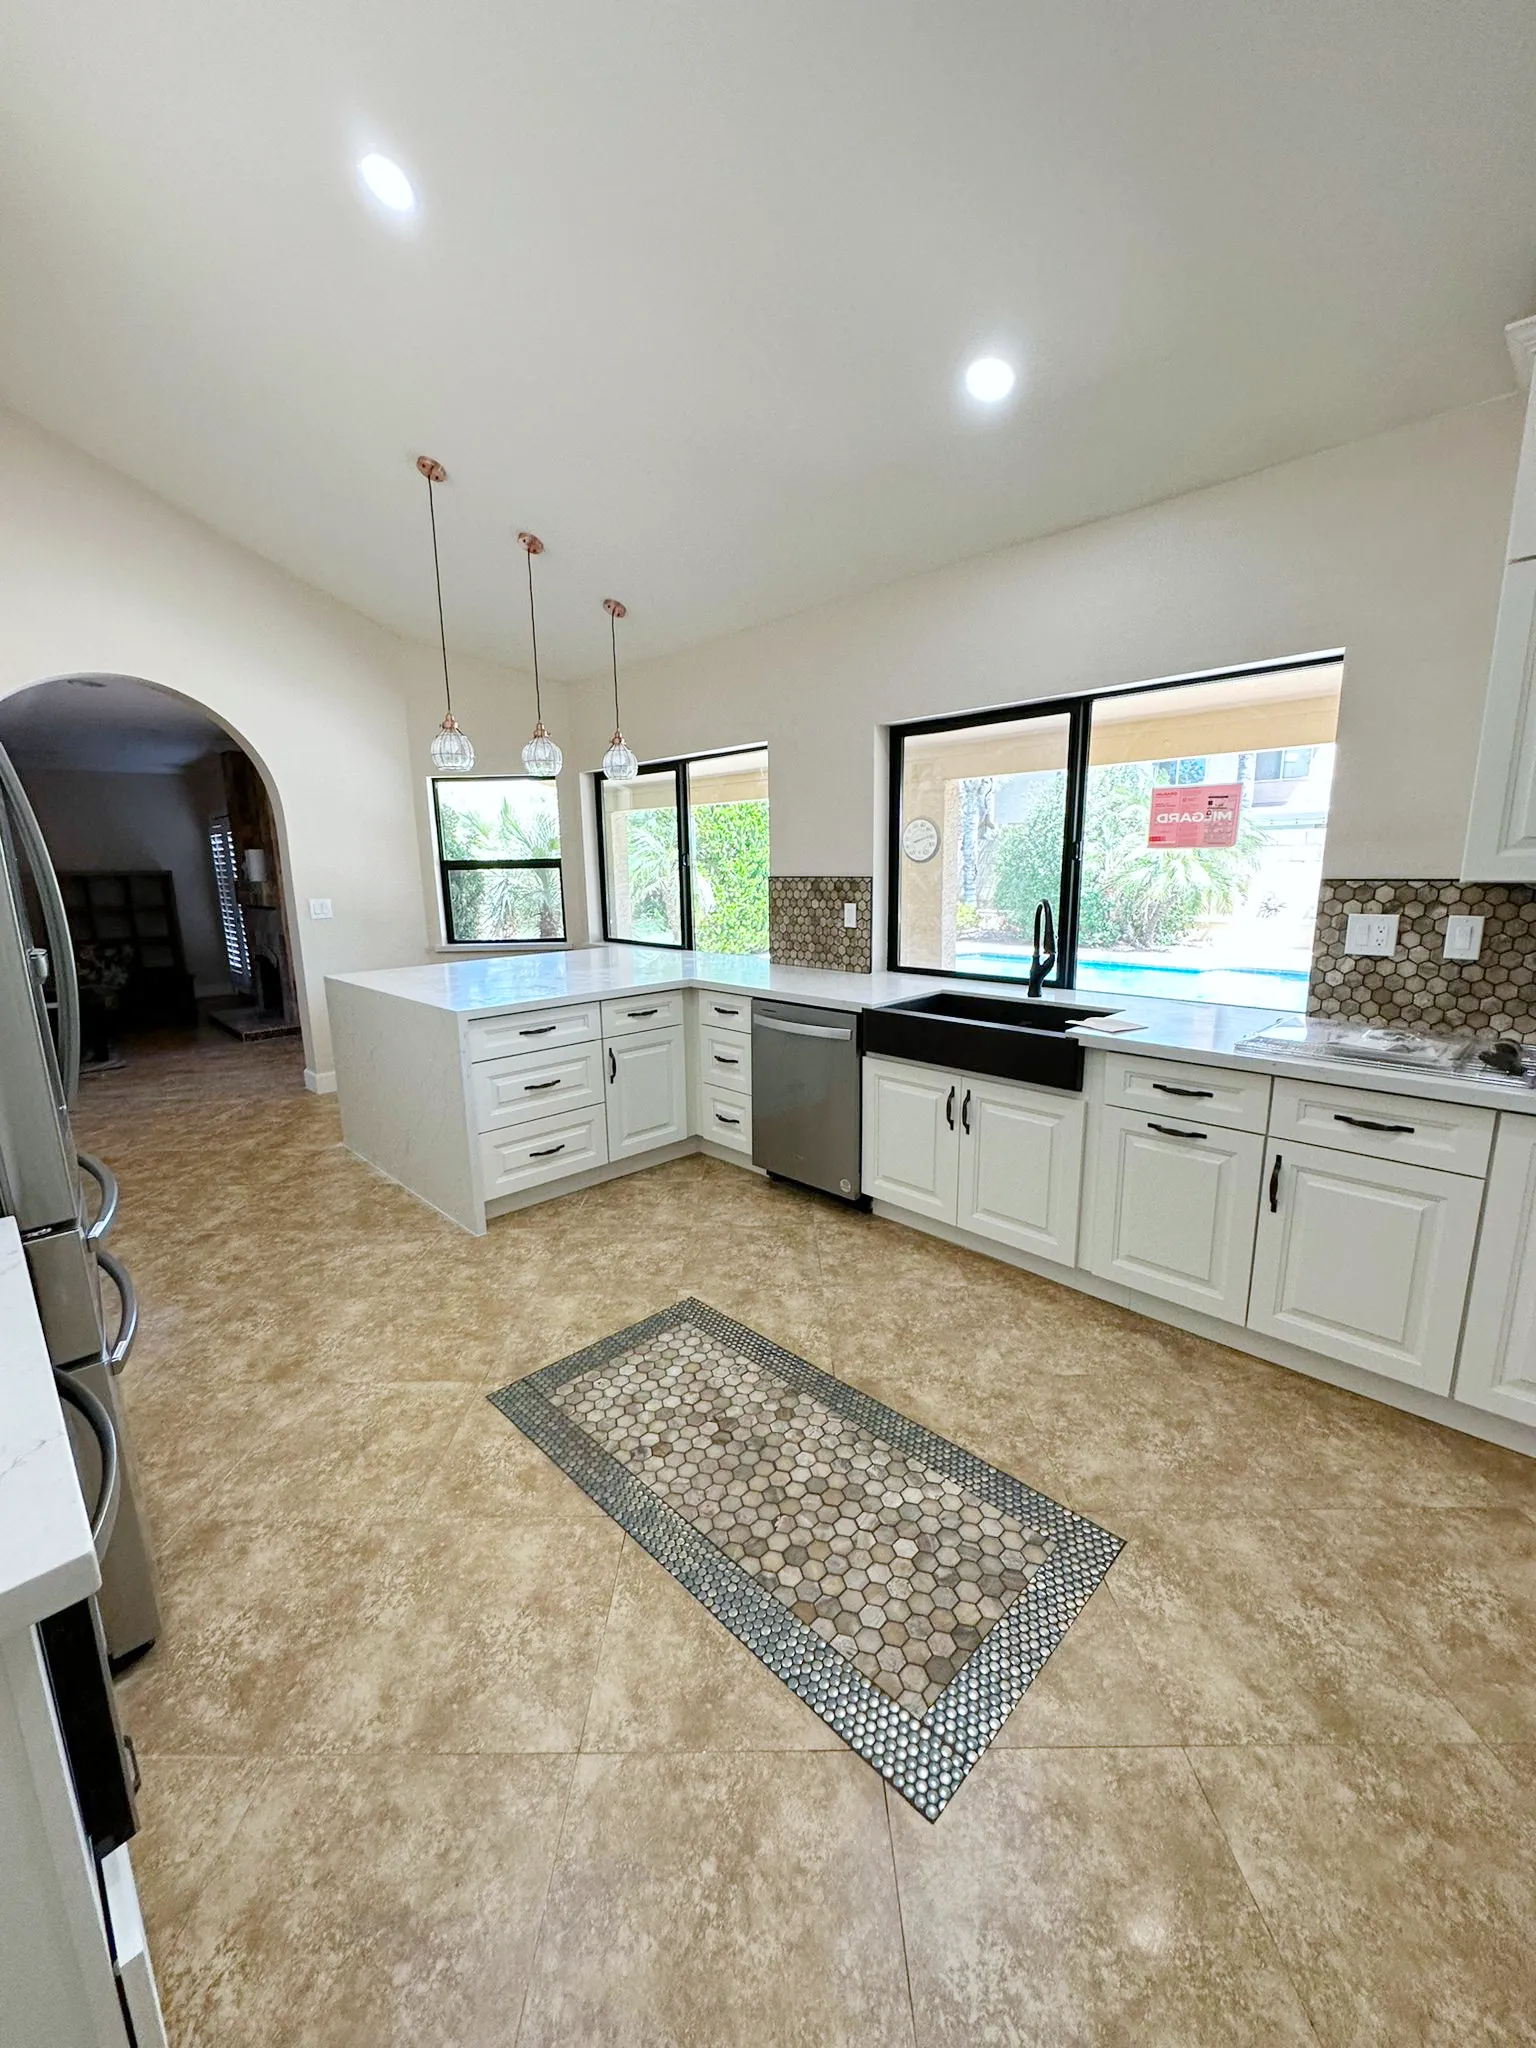 Decorative floor and backsplash tile